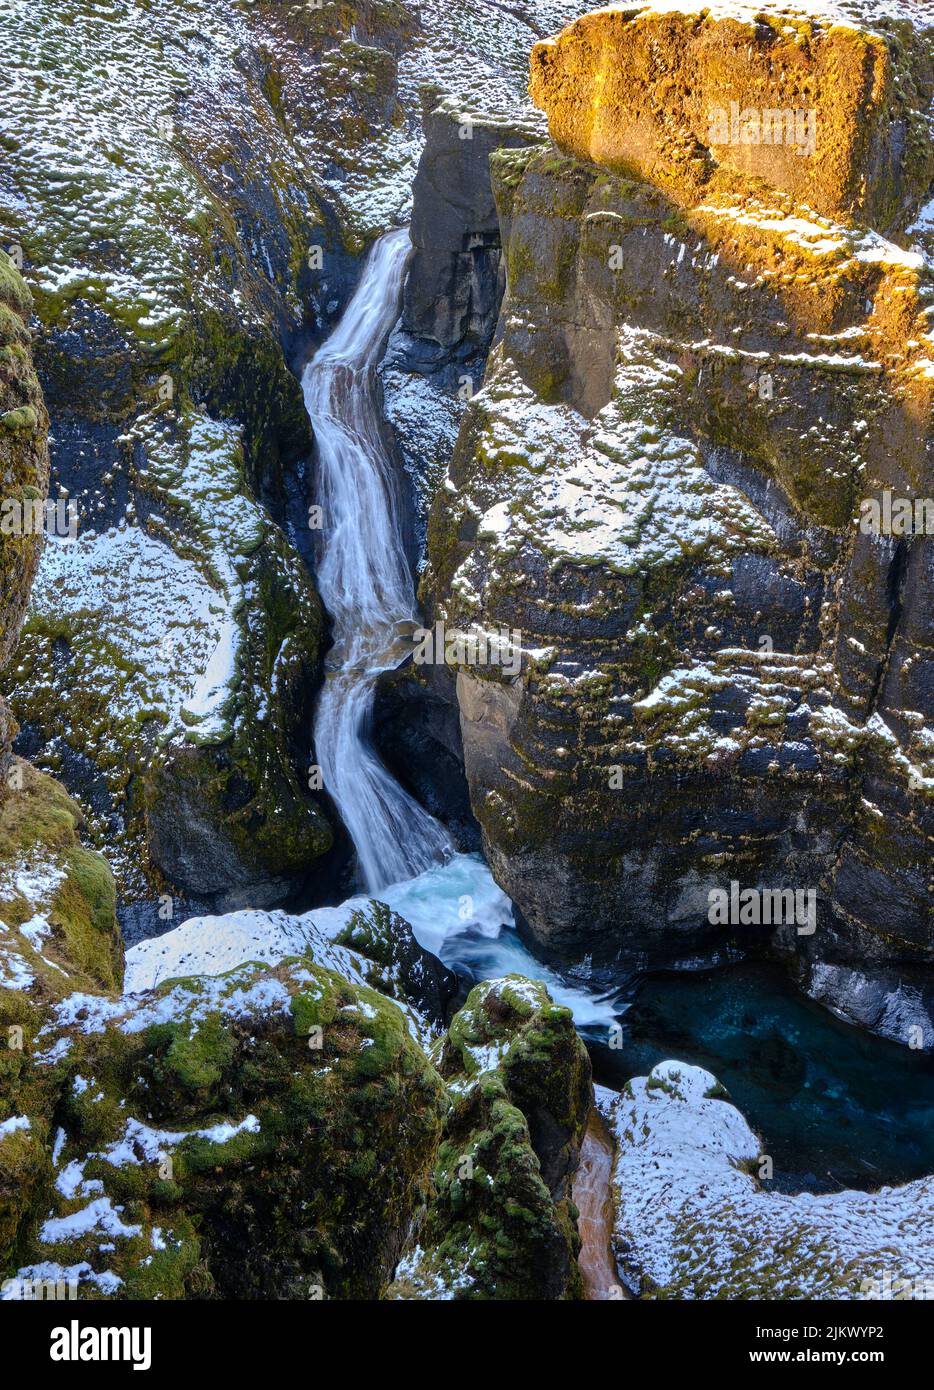 Wasserfall im Fjadrargljufur Canyon, Südisland, Fjadra River, in der Nähe von Kirkjubaejarklaustur. Gewundener Fluss durch steile, wackelige Schlucht im Winter Stockfoto